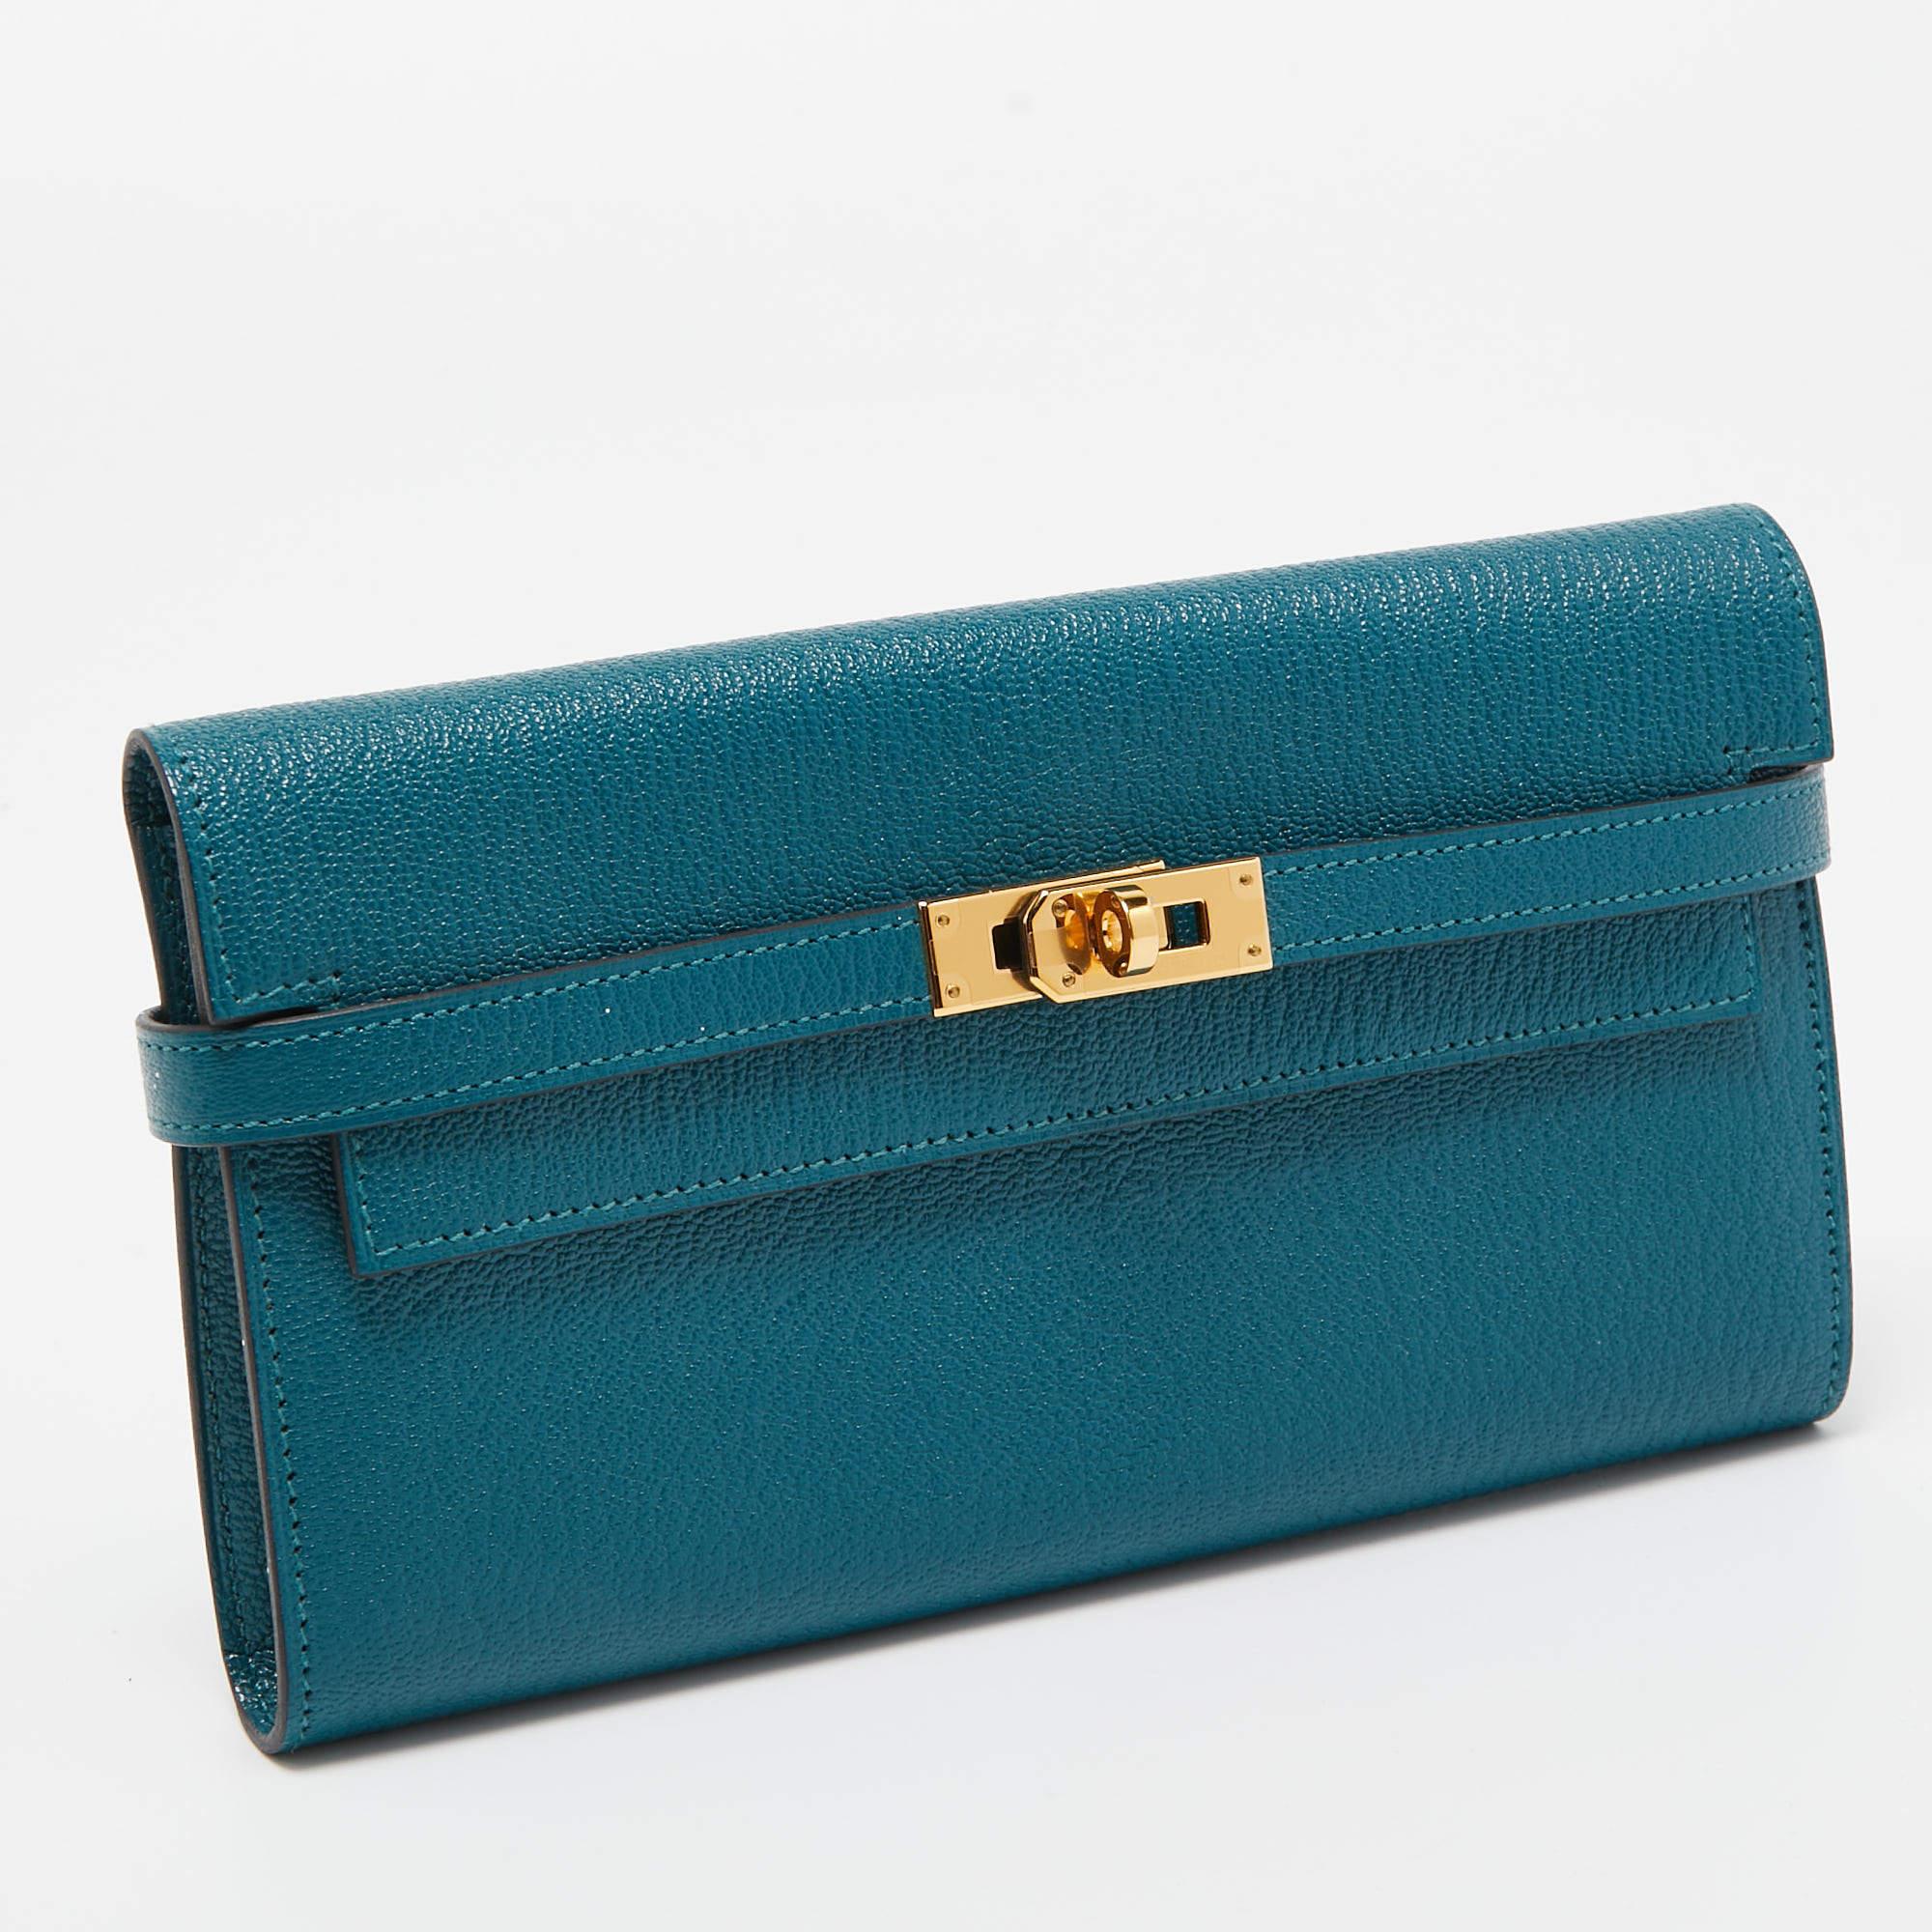 Diese edle Hermes-Brieftasche bringt einen Hauch von Luxus und großem Stil mit sich. Sie ist perfekt verarbeitet, um Ihre Karten und Ihr Bargeld ordentlich zu verstauen.

